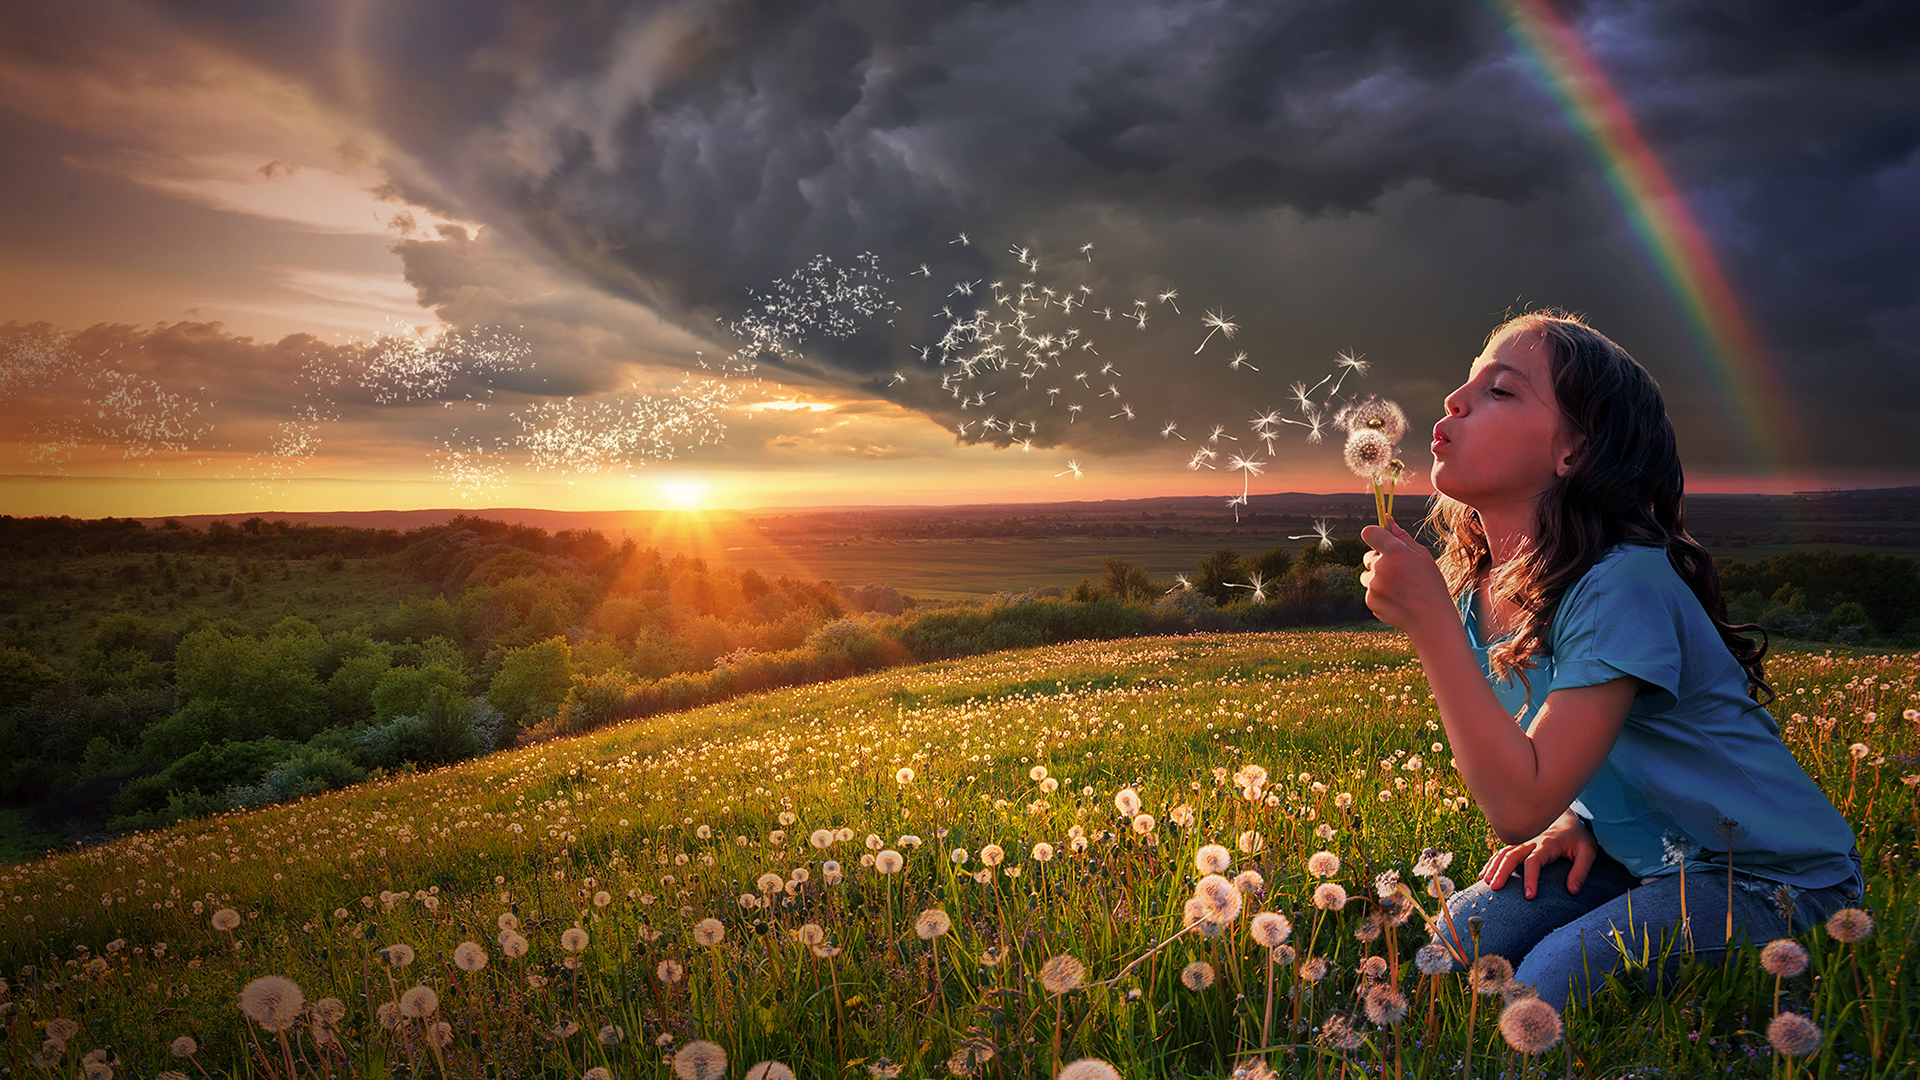 Girl blowing dandelion across sunset in a field